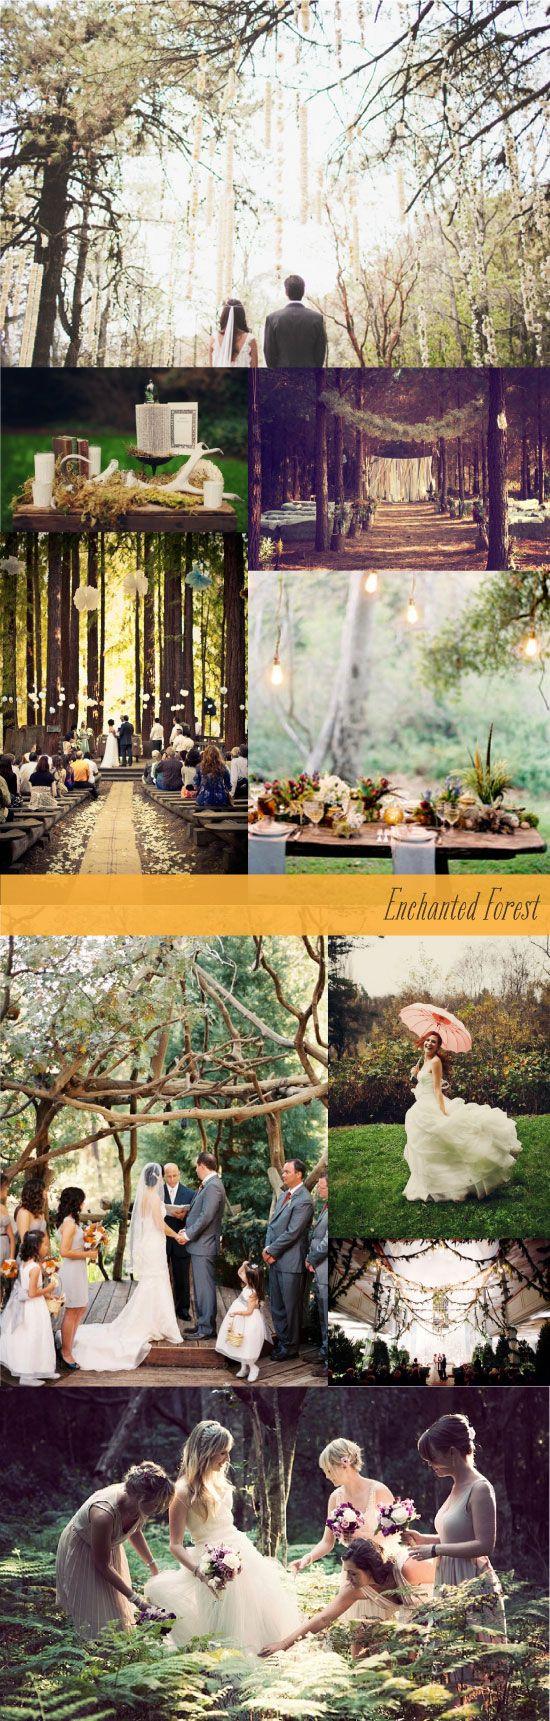 زفاف - Enchanted Rustic Forest Wedding Inspiration Board